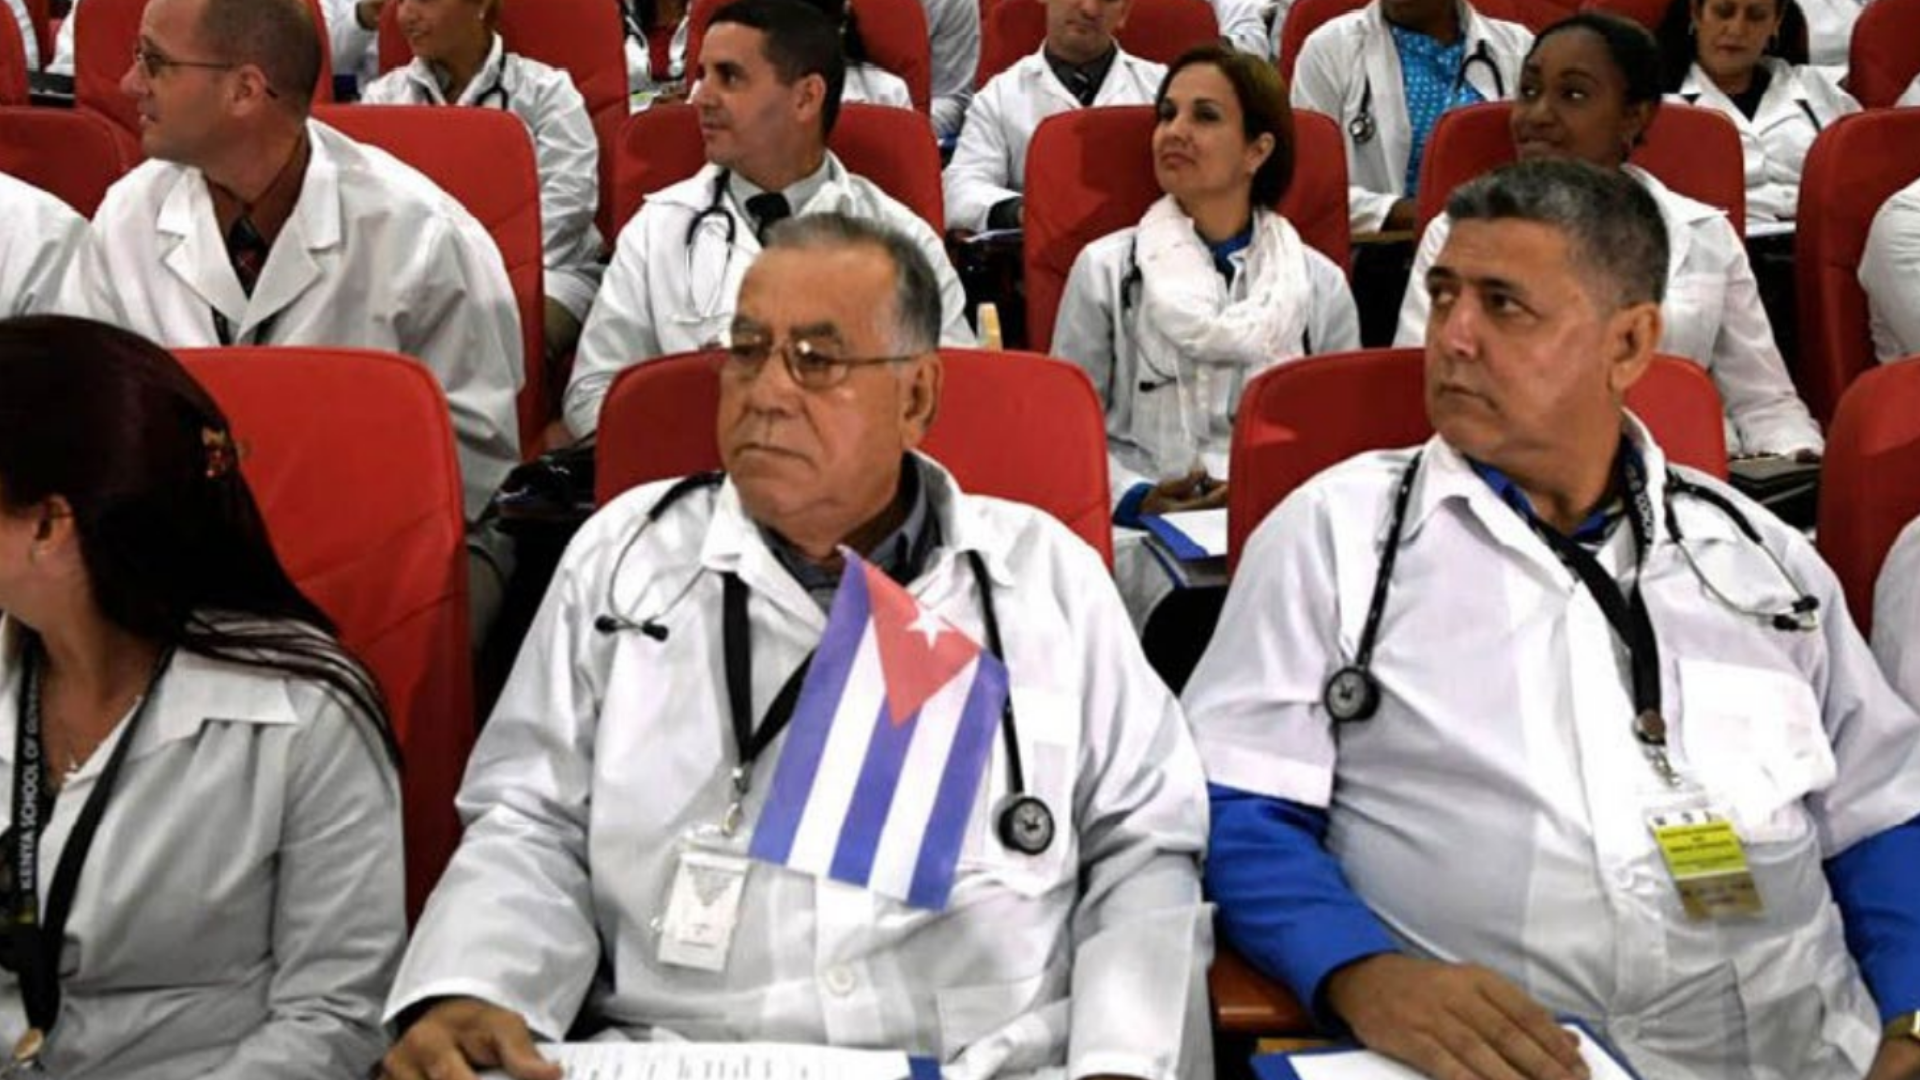 Médicos cubanos asisten a una conferencia en Kenia. Créditos de las fotos: Getty Images